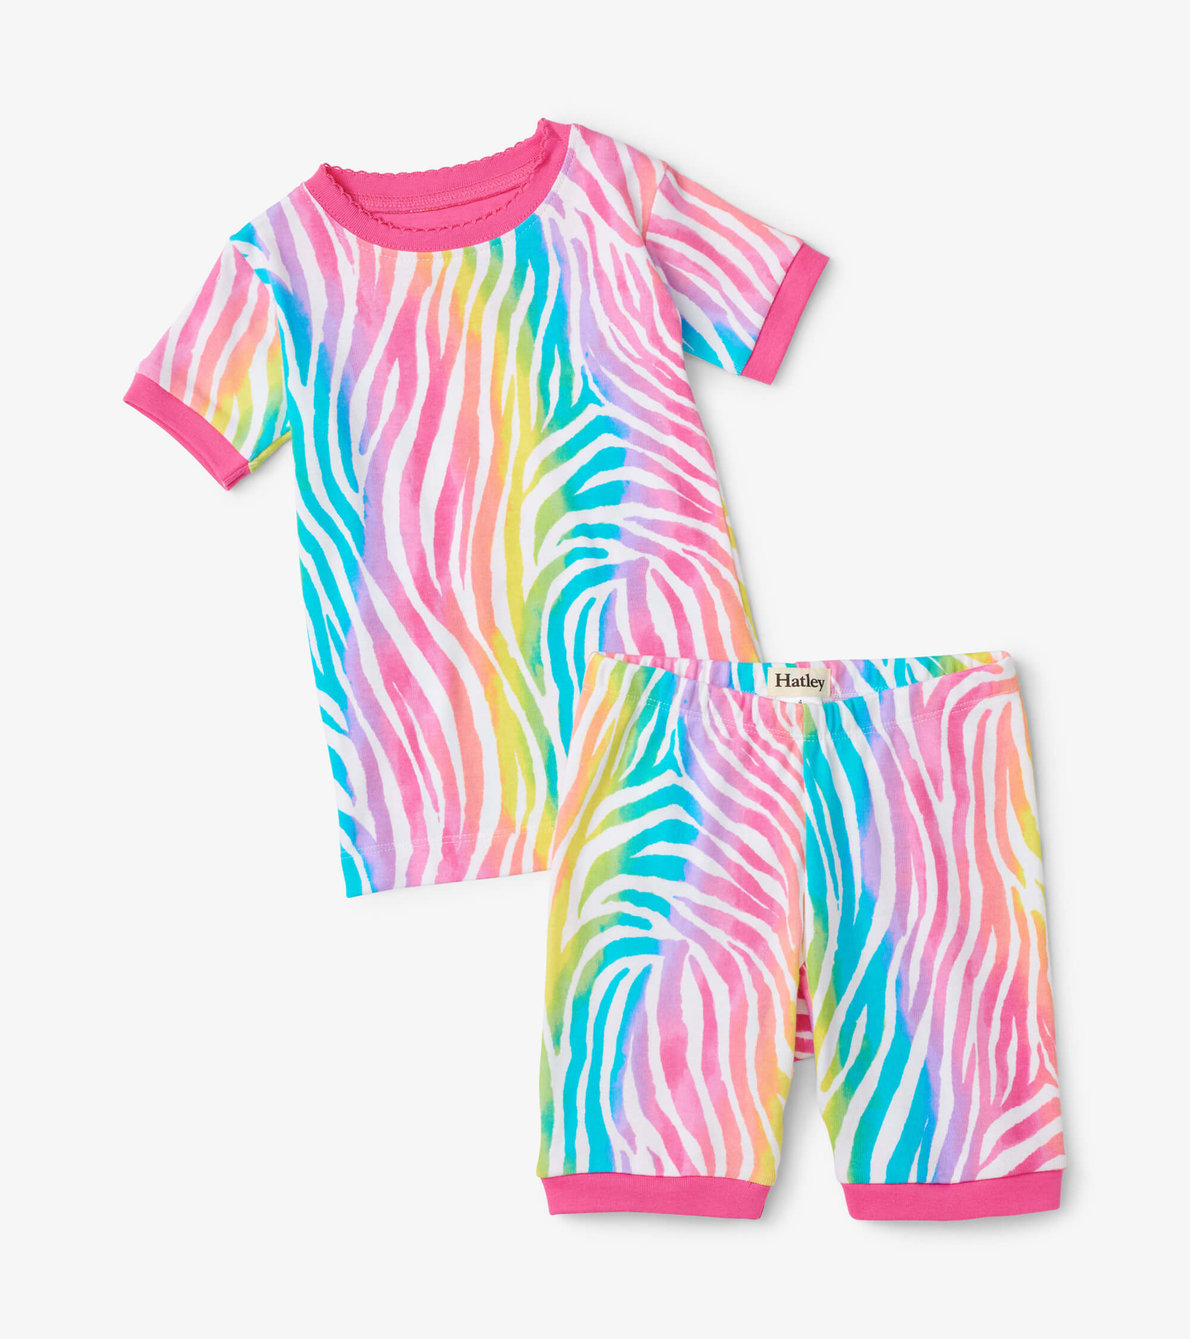 View larger image of Rainbow Zebra Short Pajama Set